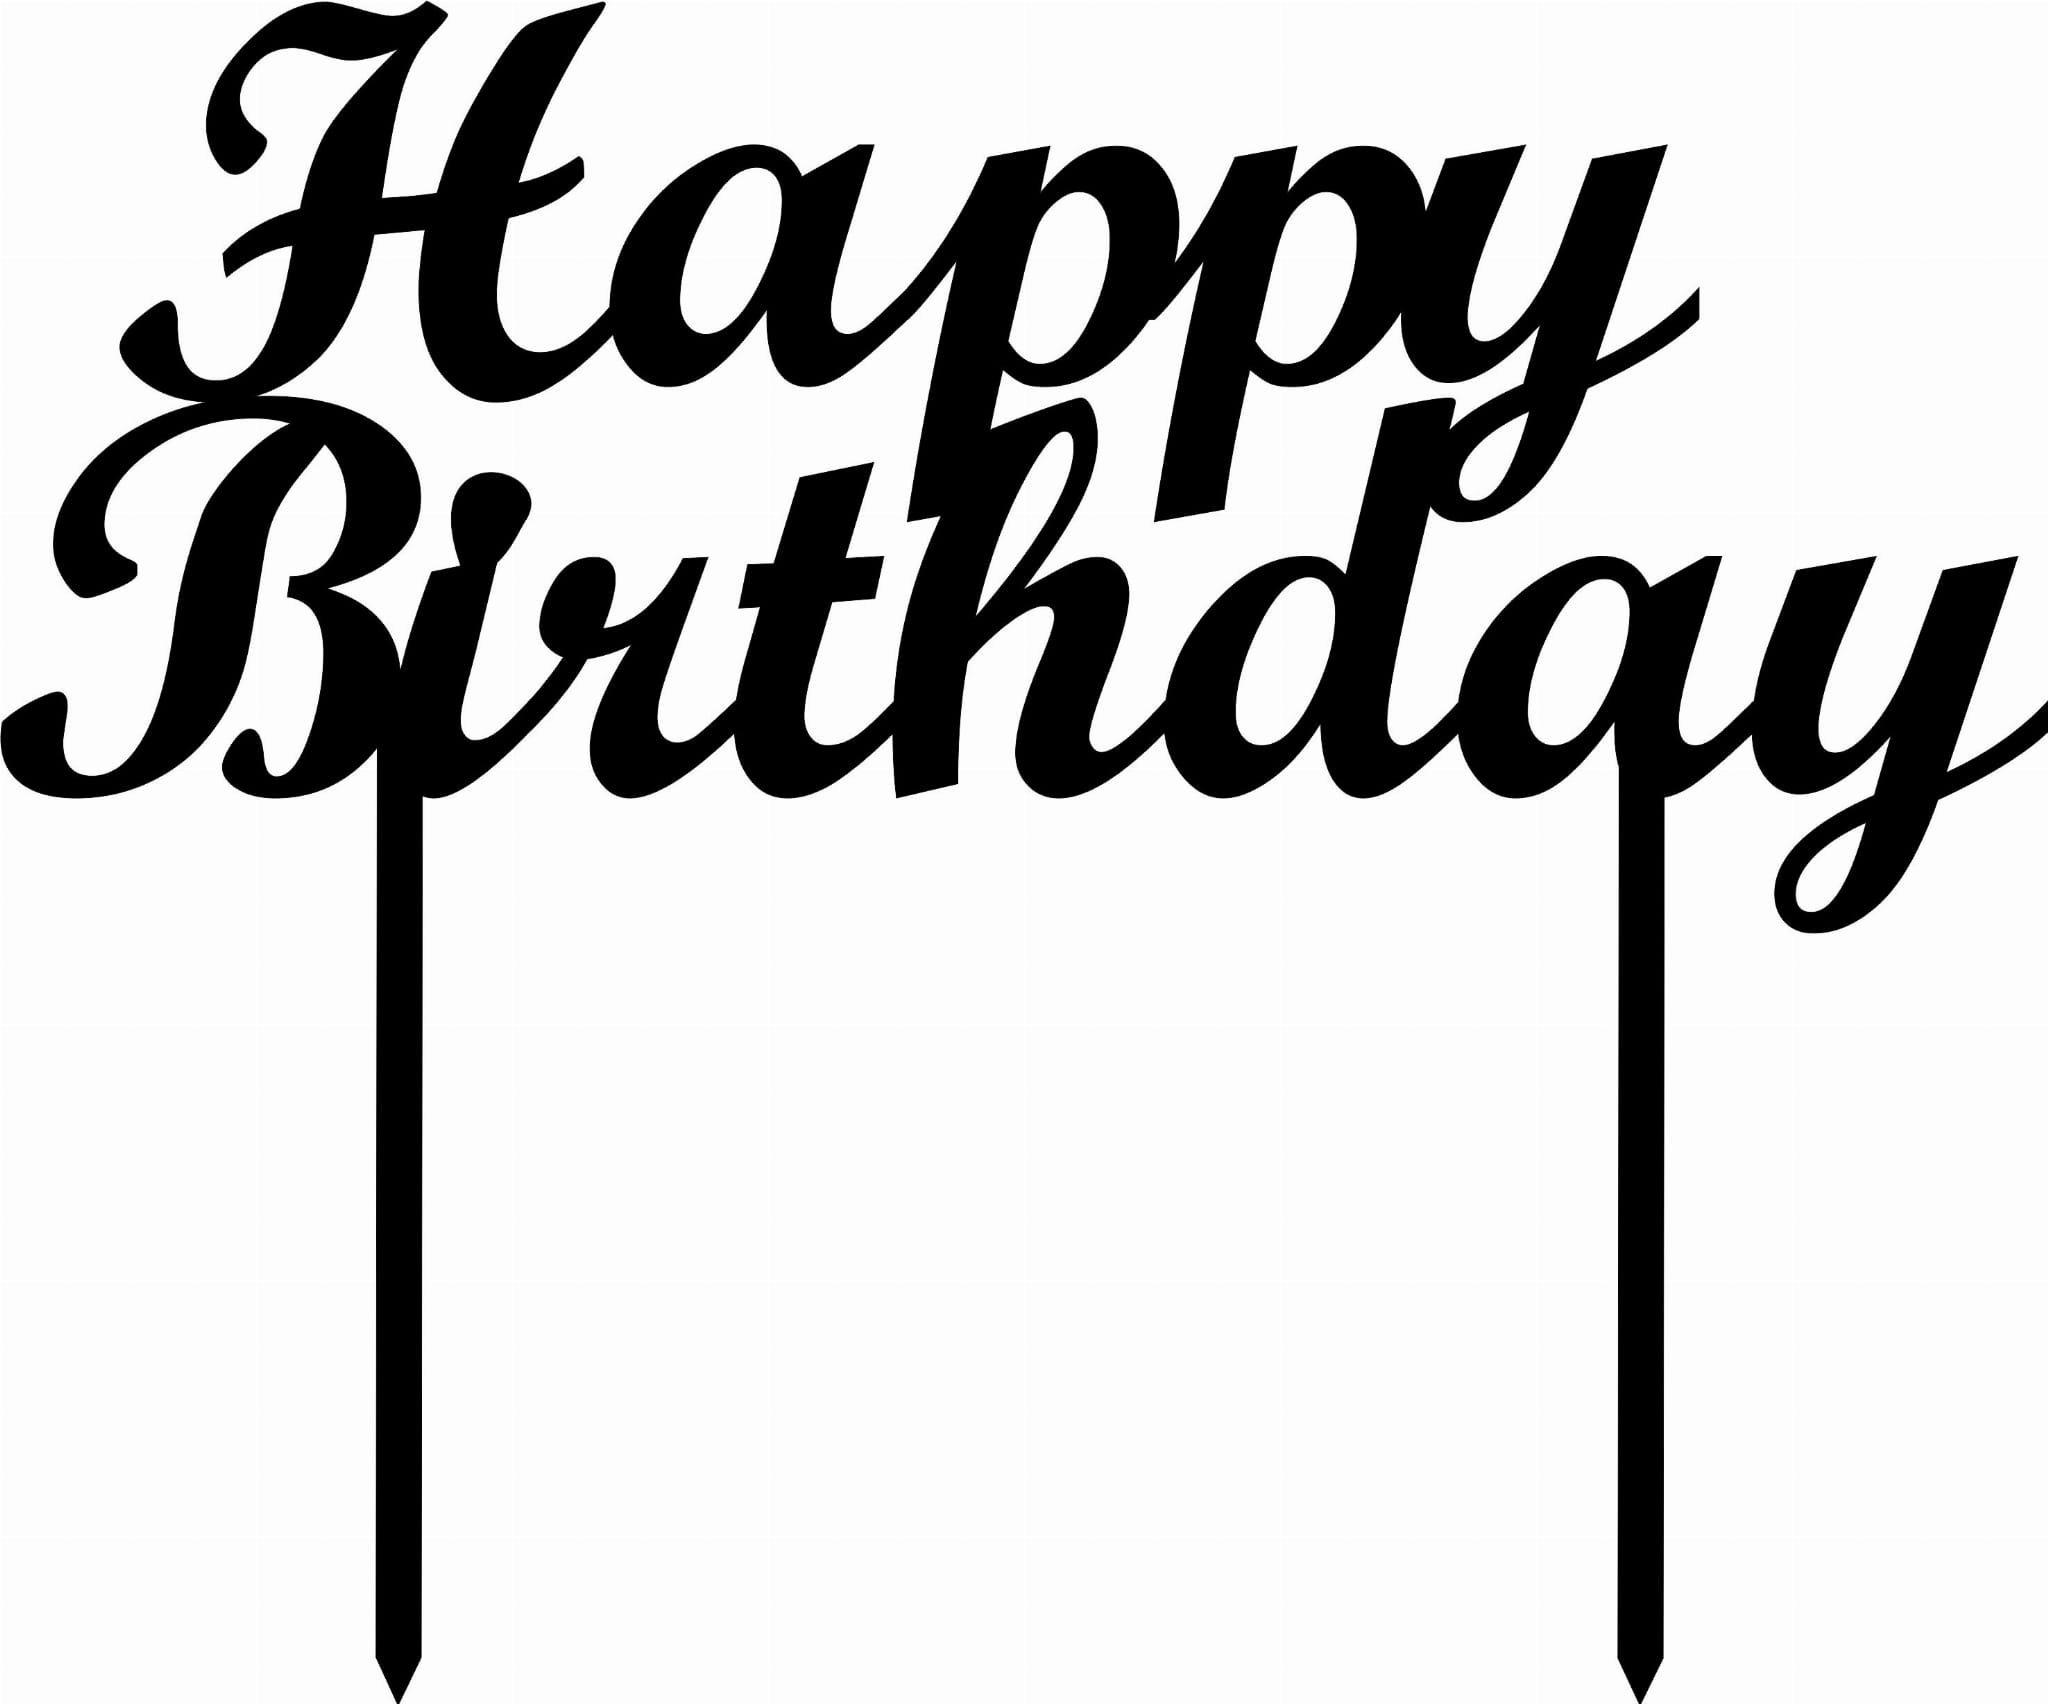 Надписи на торт печатью. Топперы с надписями на торт. Топпер Happy Birthday. Топпер в торт Happy Birthday. Трафарет Happy Birthday для торта.